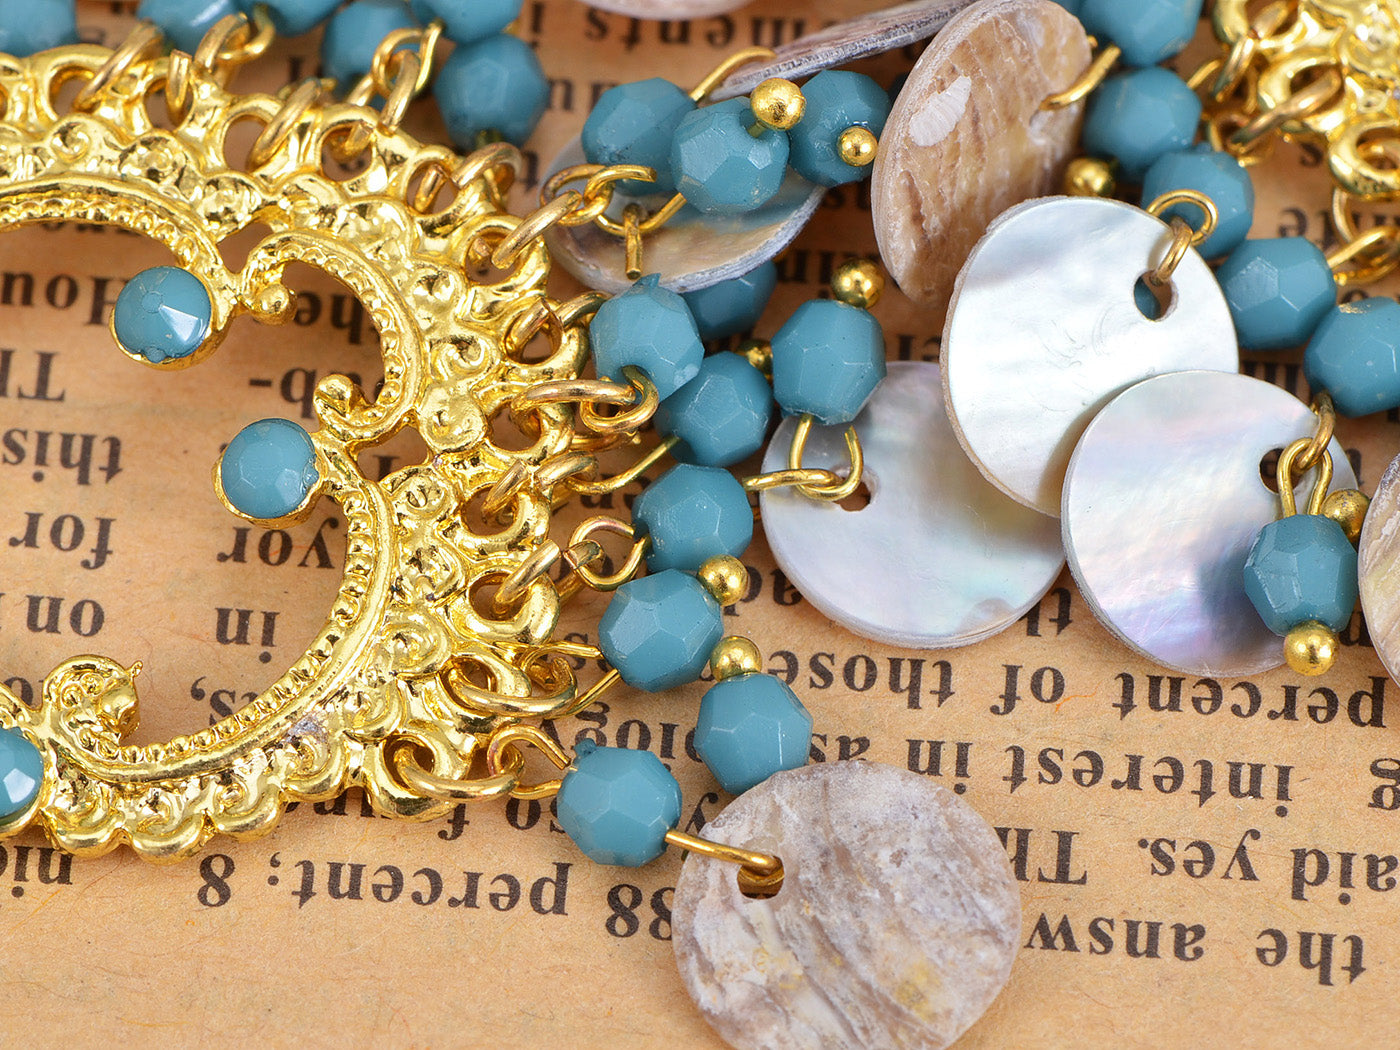 Boho Tribal Gold Turquoise Blue Seashell Chandelier Goddess Earrings